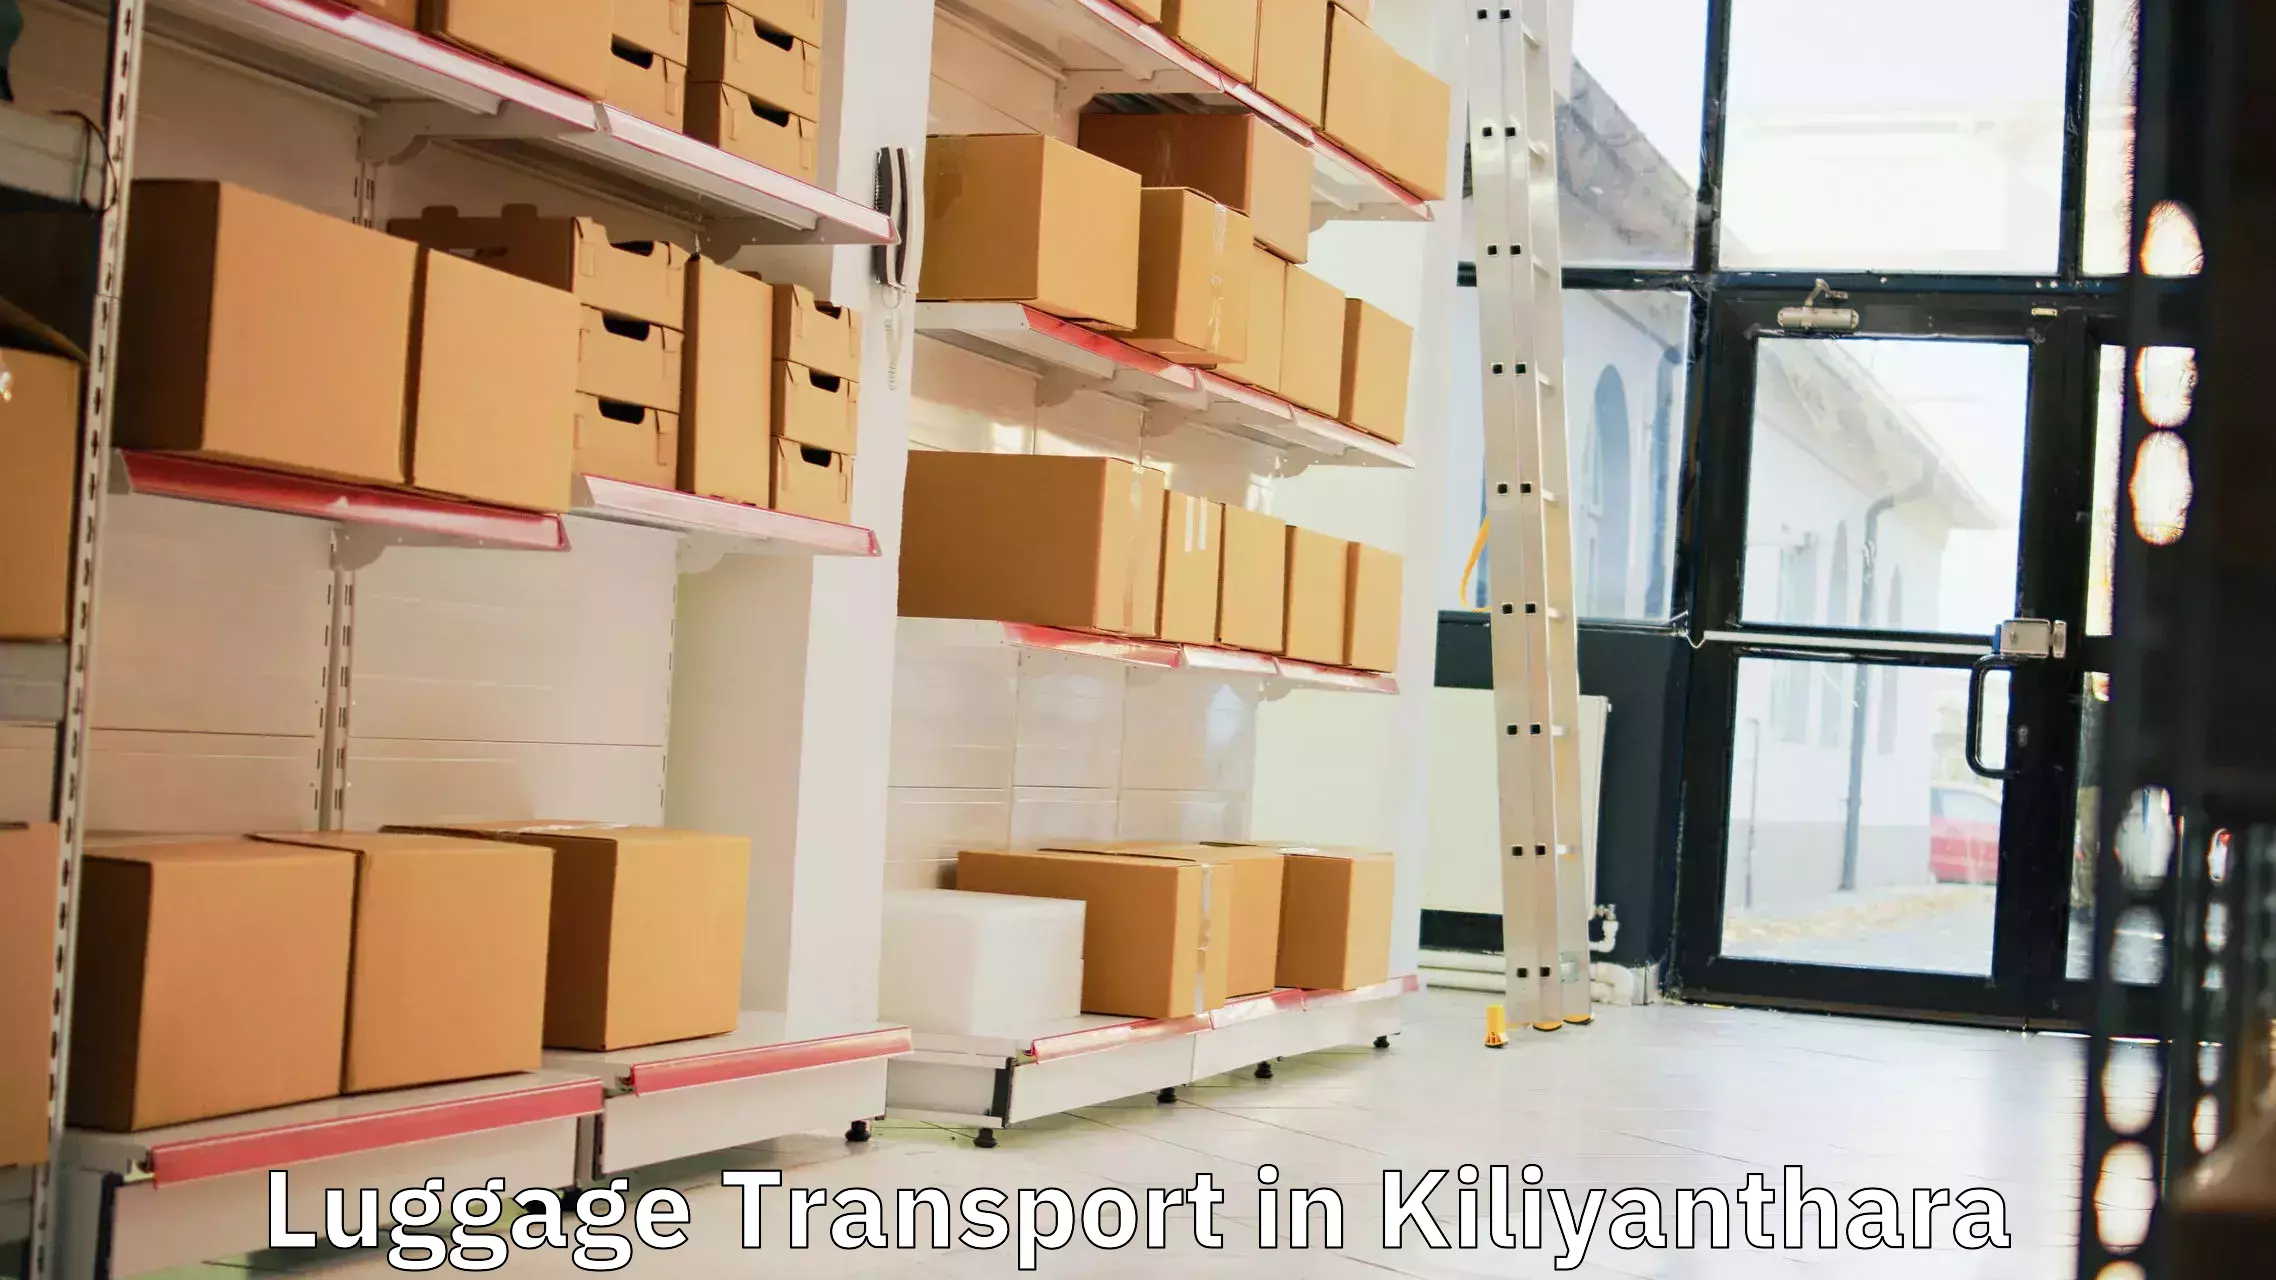 Luggage transport rates in Kiliyanthara